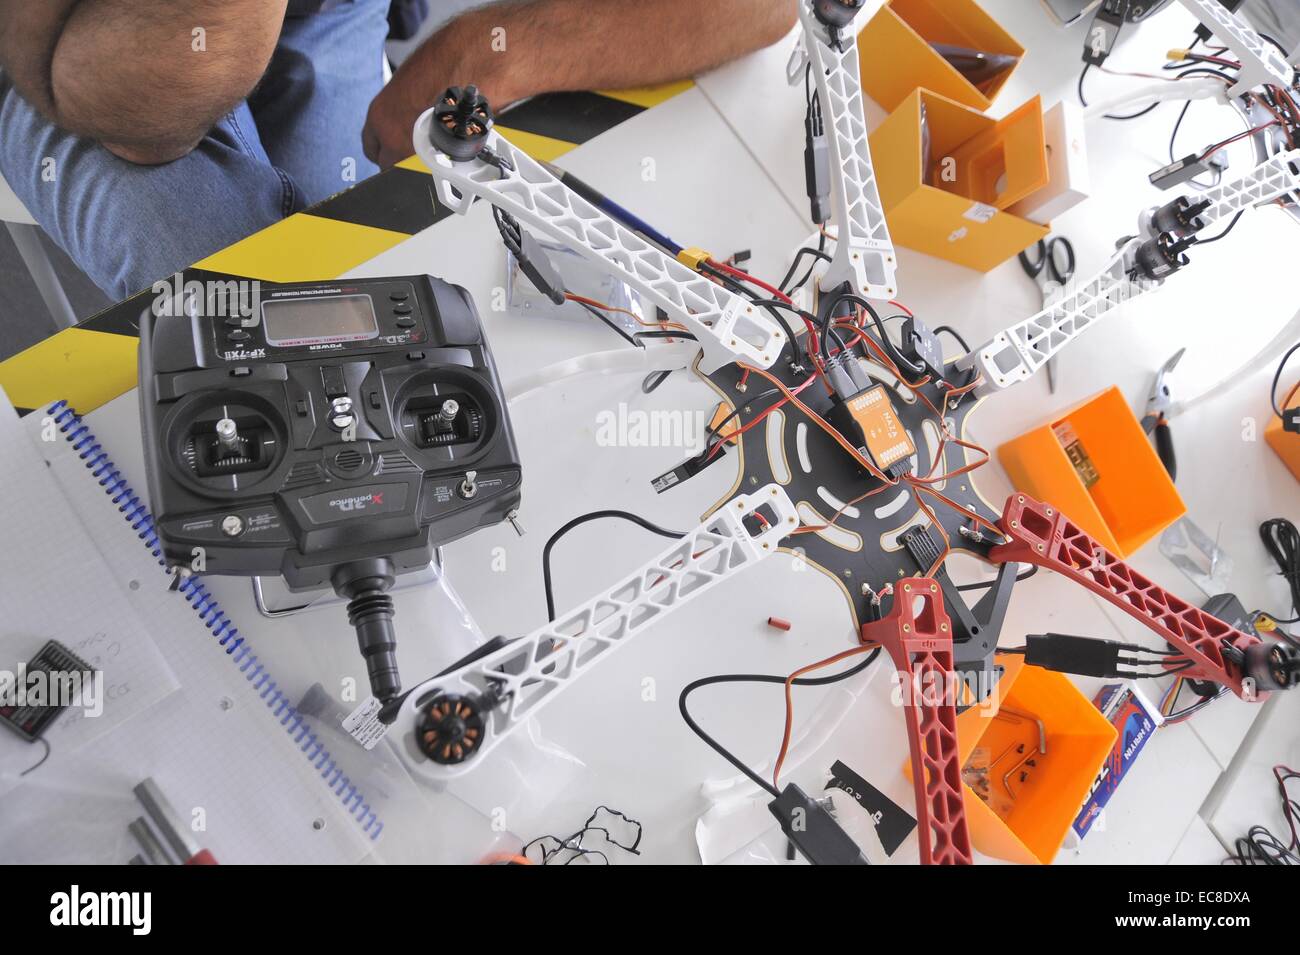 Italien, Mailand FabLab (Fabrication Laboratory), Werkstatt für den Bau einer Drohne Stockfoto